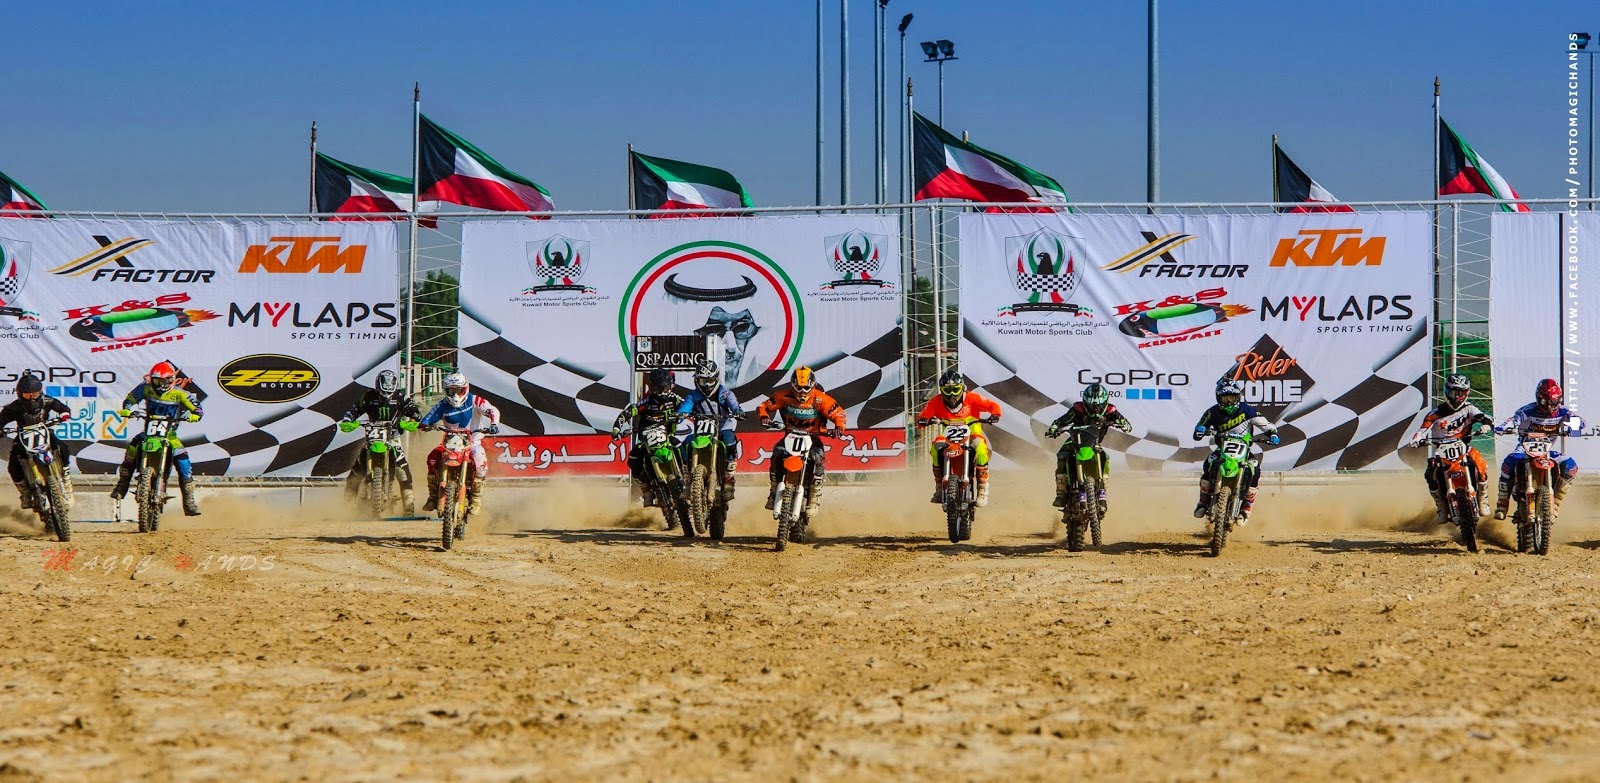 Kuwait Motocross